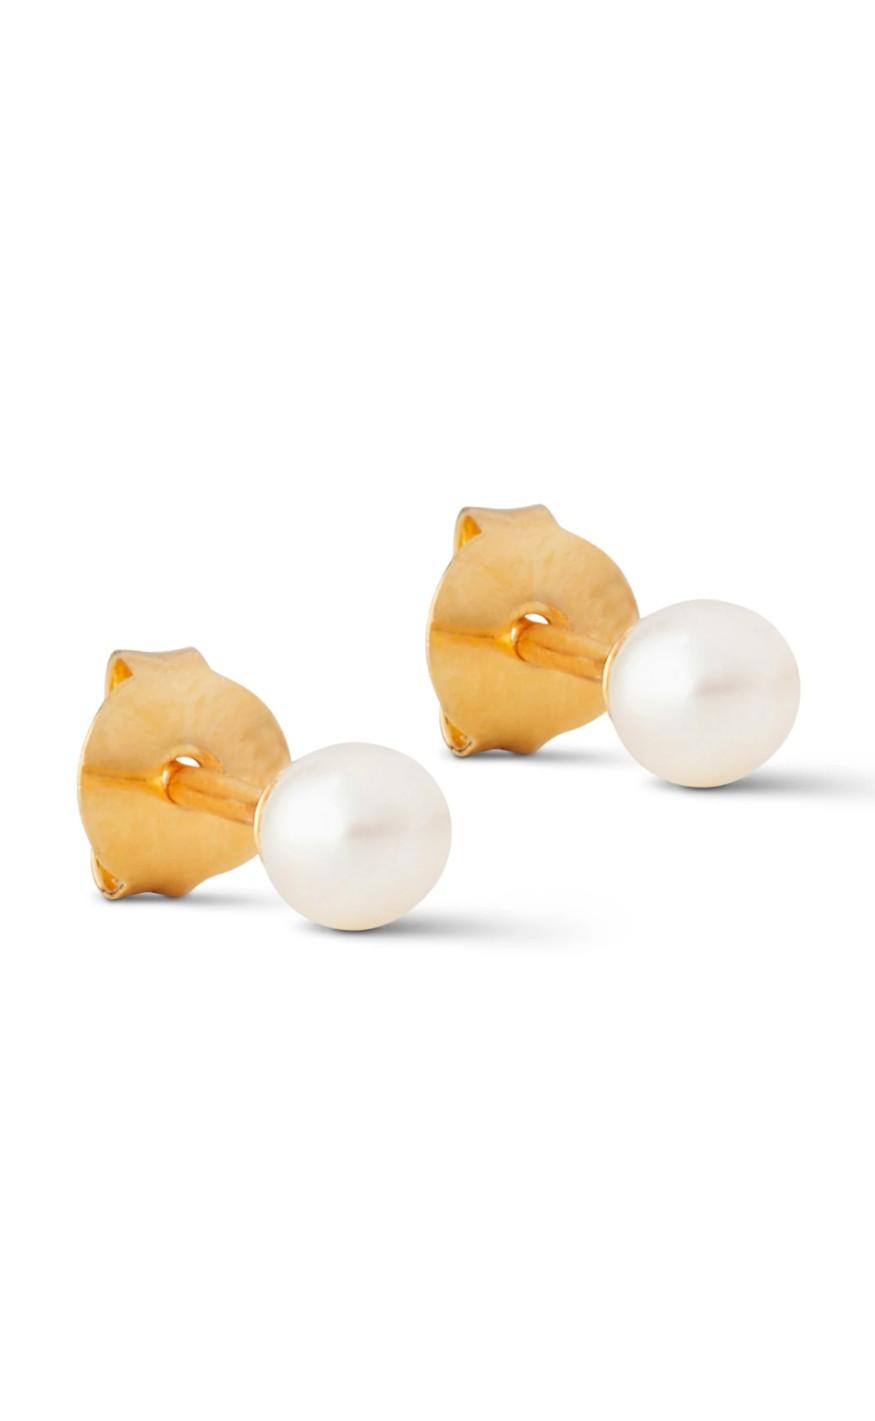 #1 på vores liste over perler er Perle